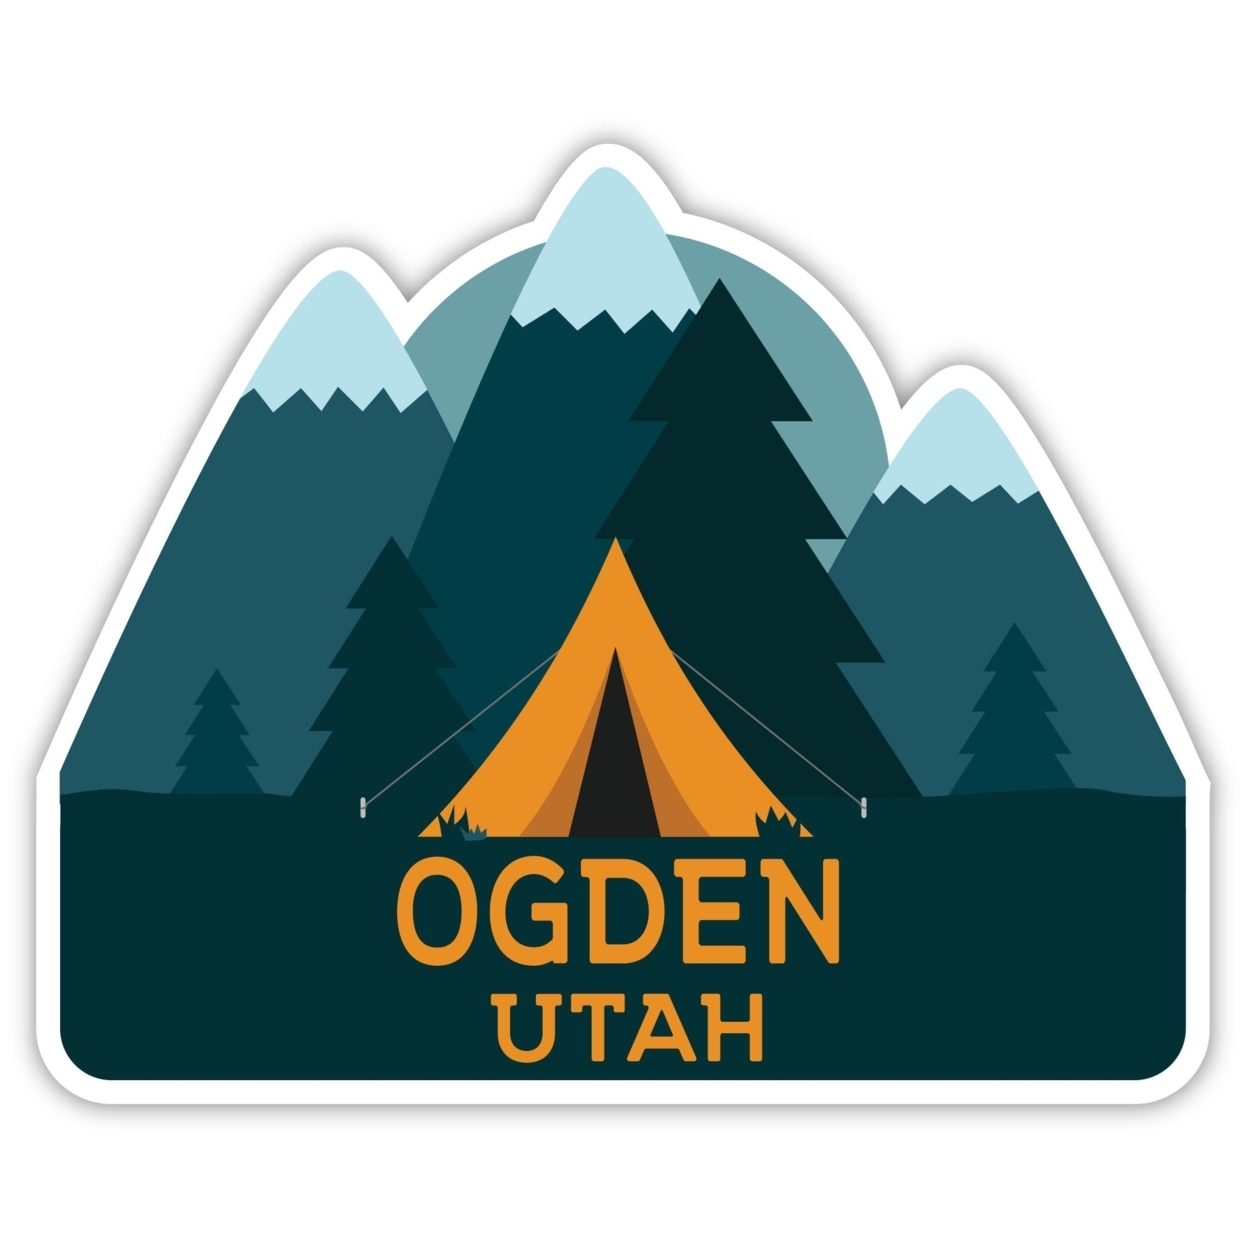 Ogden Utah Souvenir Decorative Stickers (Choose Theme And Size) - Single Unit, 2-Inch, Tent